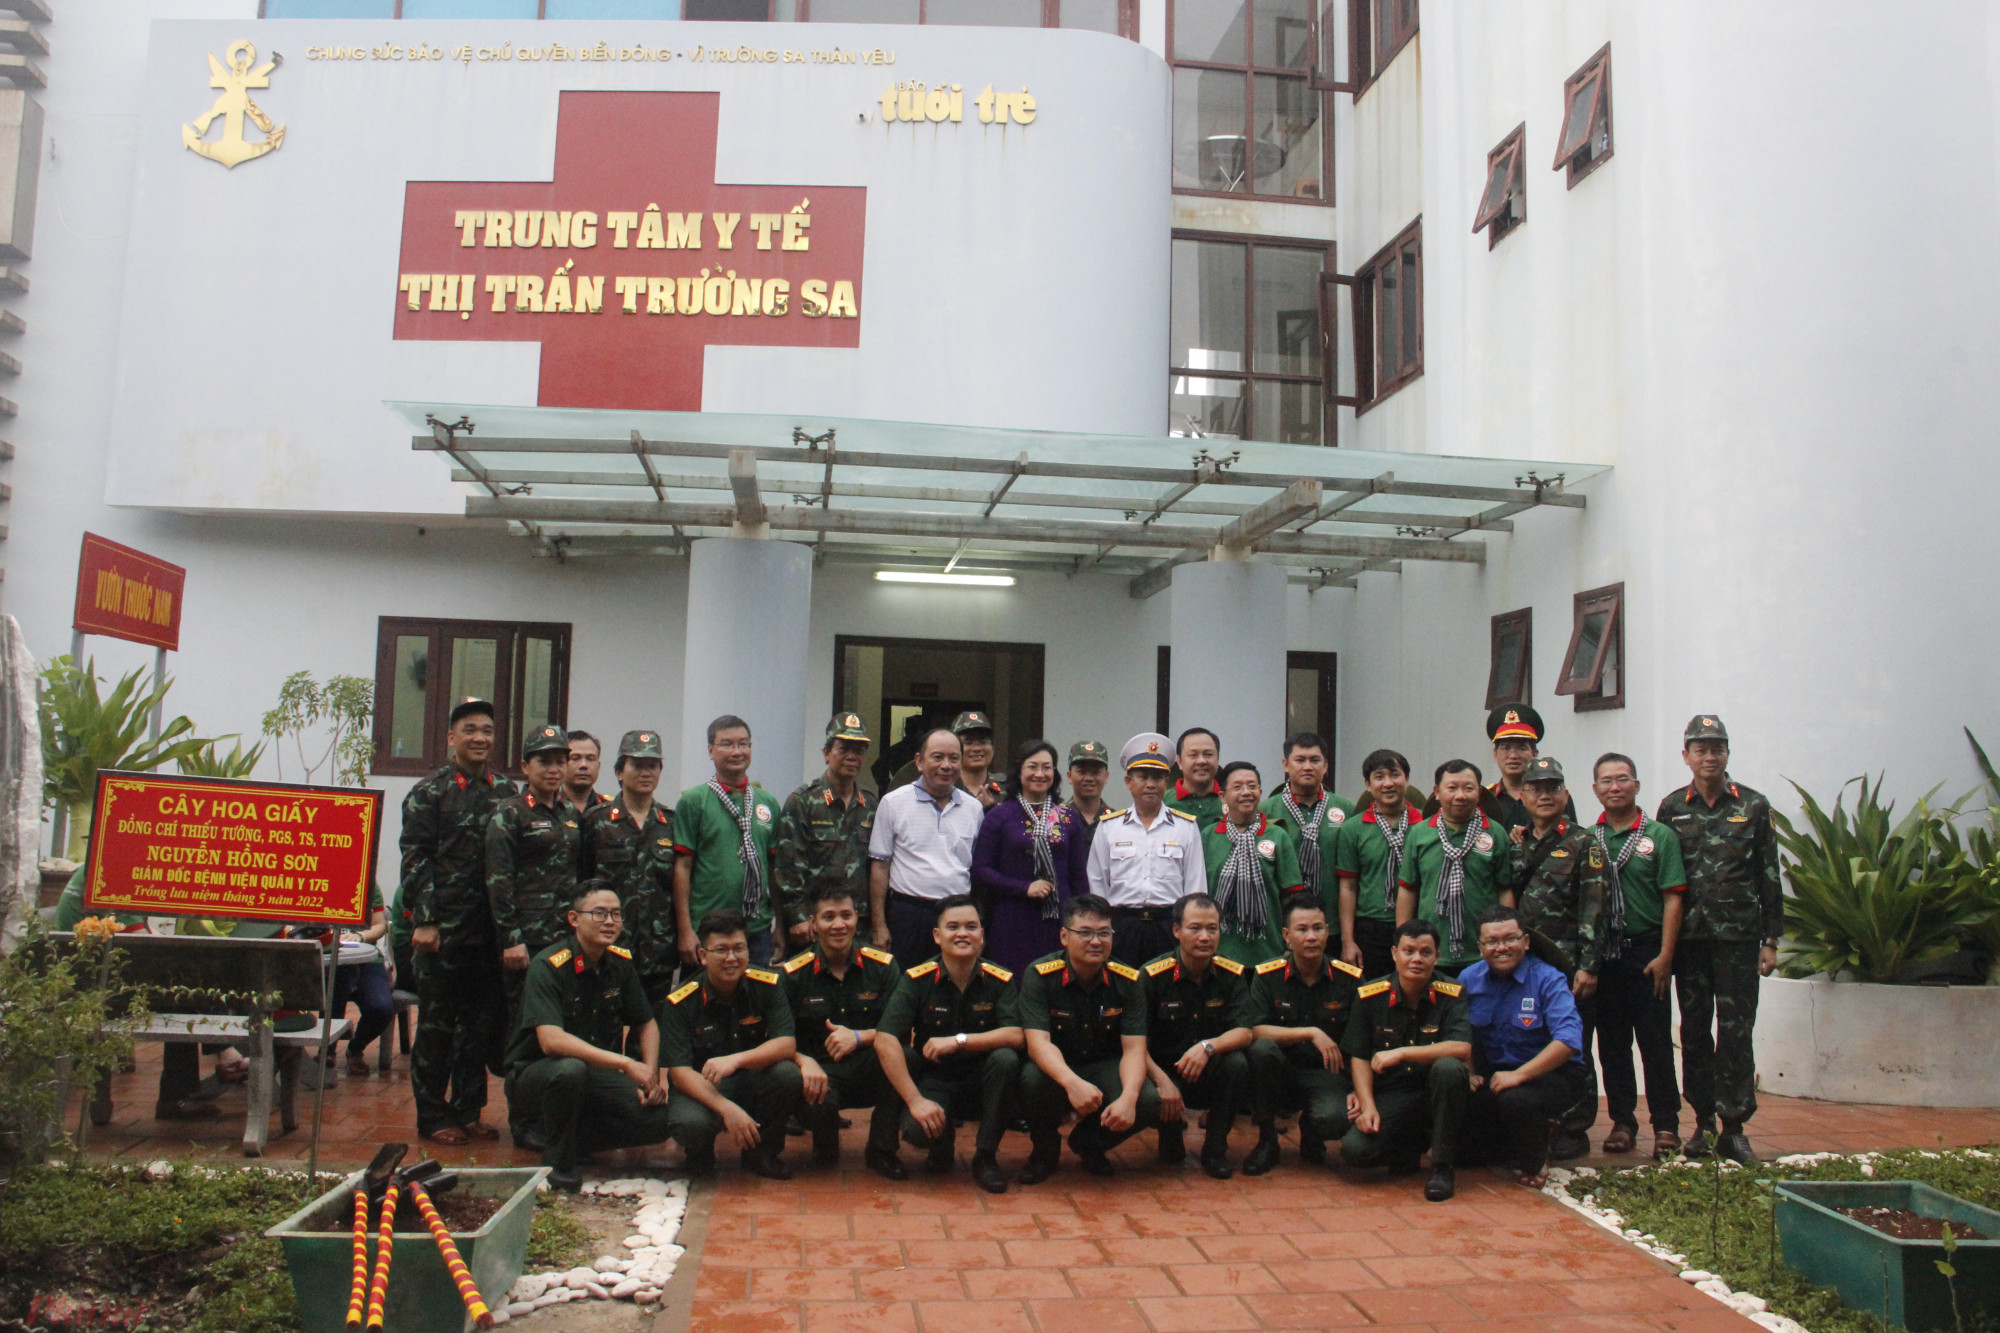 Phó Chủ tịch UBND TPHCM Phan Thị Thắng (đững giữa), thiếu tướng Nguyễn Hồng Sơn - Giám đốc Bệnh viện Quân y 175 (đứng thứ 6 từ trái qua) và đoàn y, bác sĩ TPHCM chụp hình lưu niệm tại Trung tâm y tế thị trấn Trường Sa.